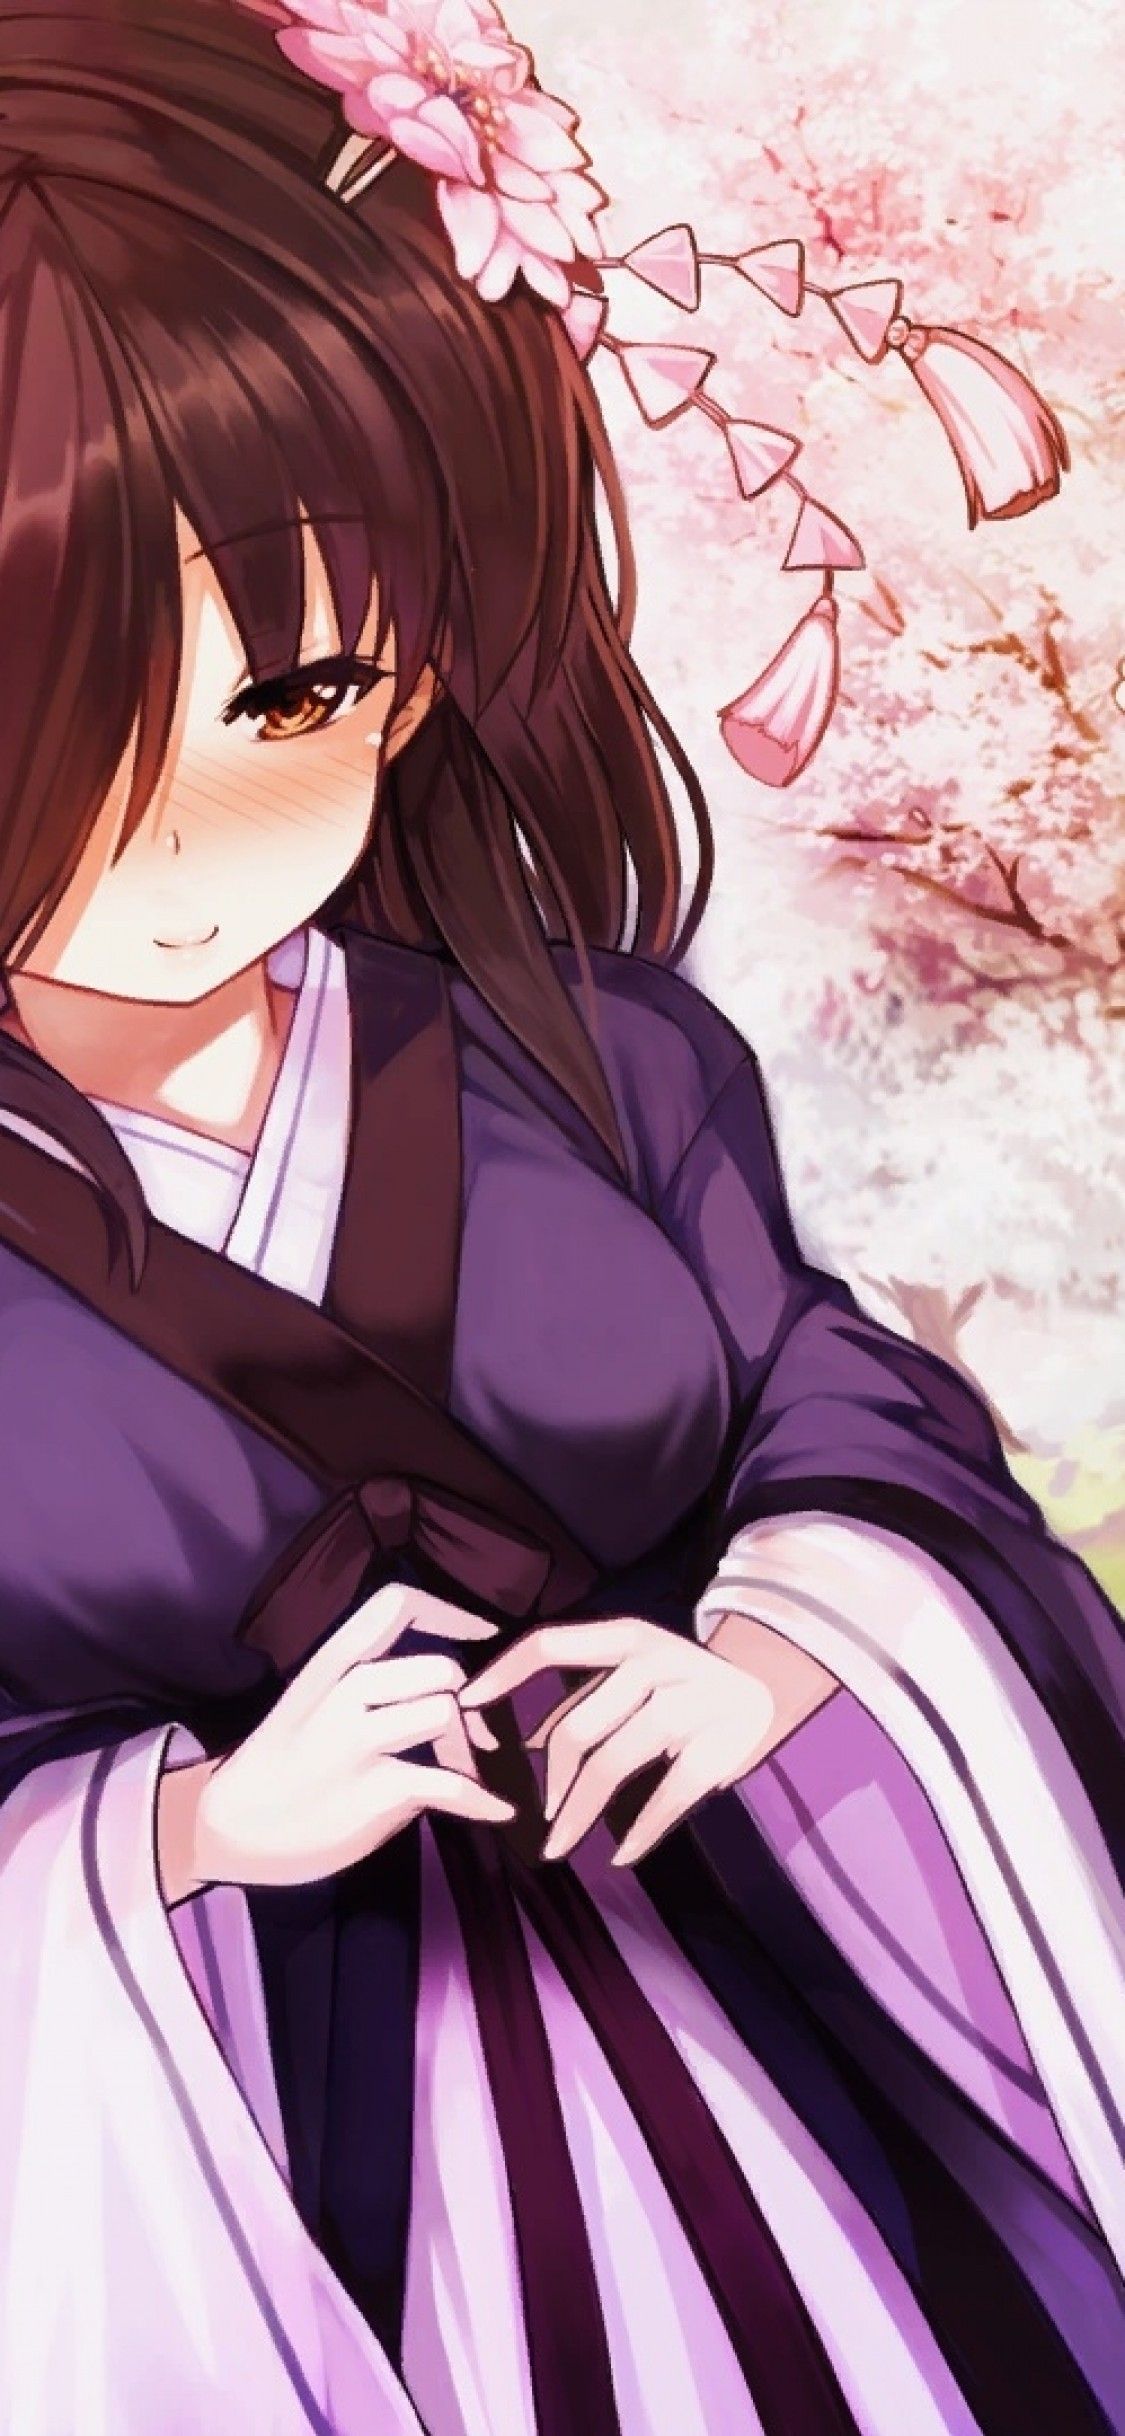 Download 1125x2436 Anime Girl, Brown Hair, Kimono, Sakura Blossom